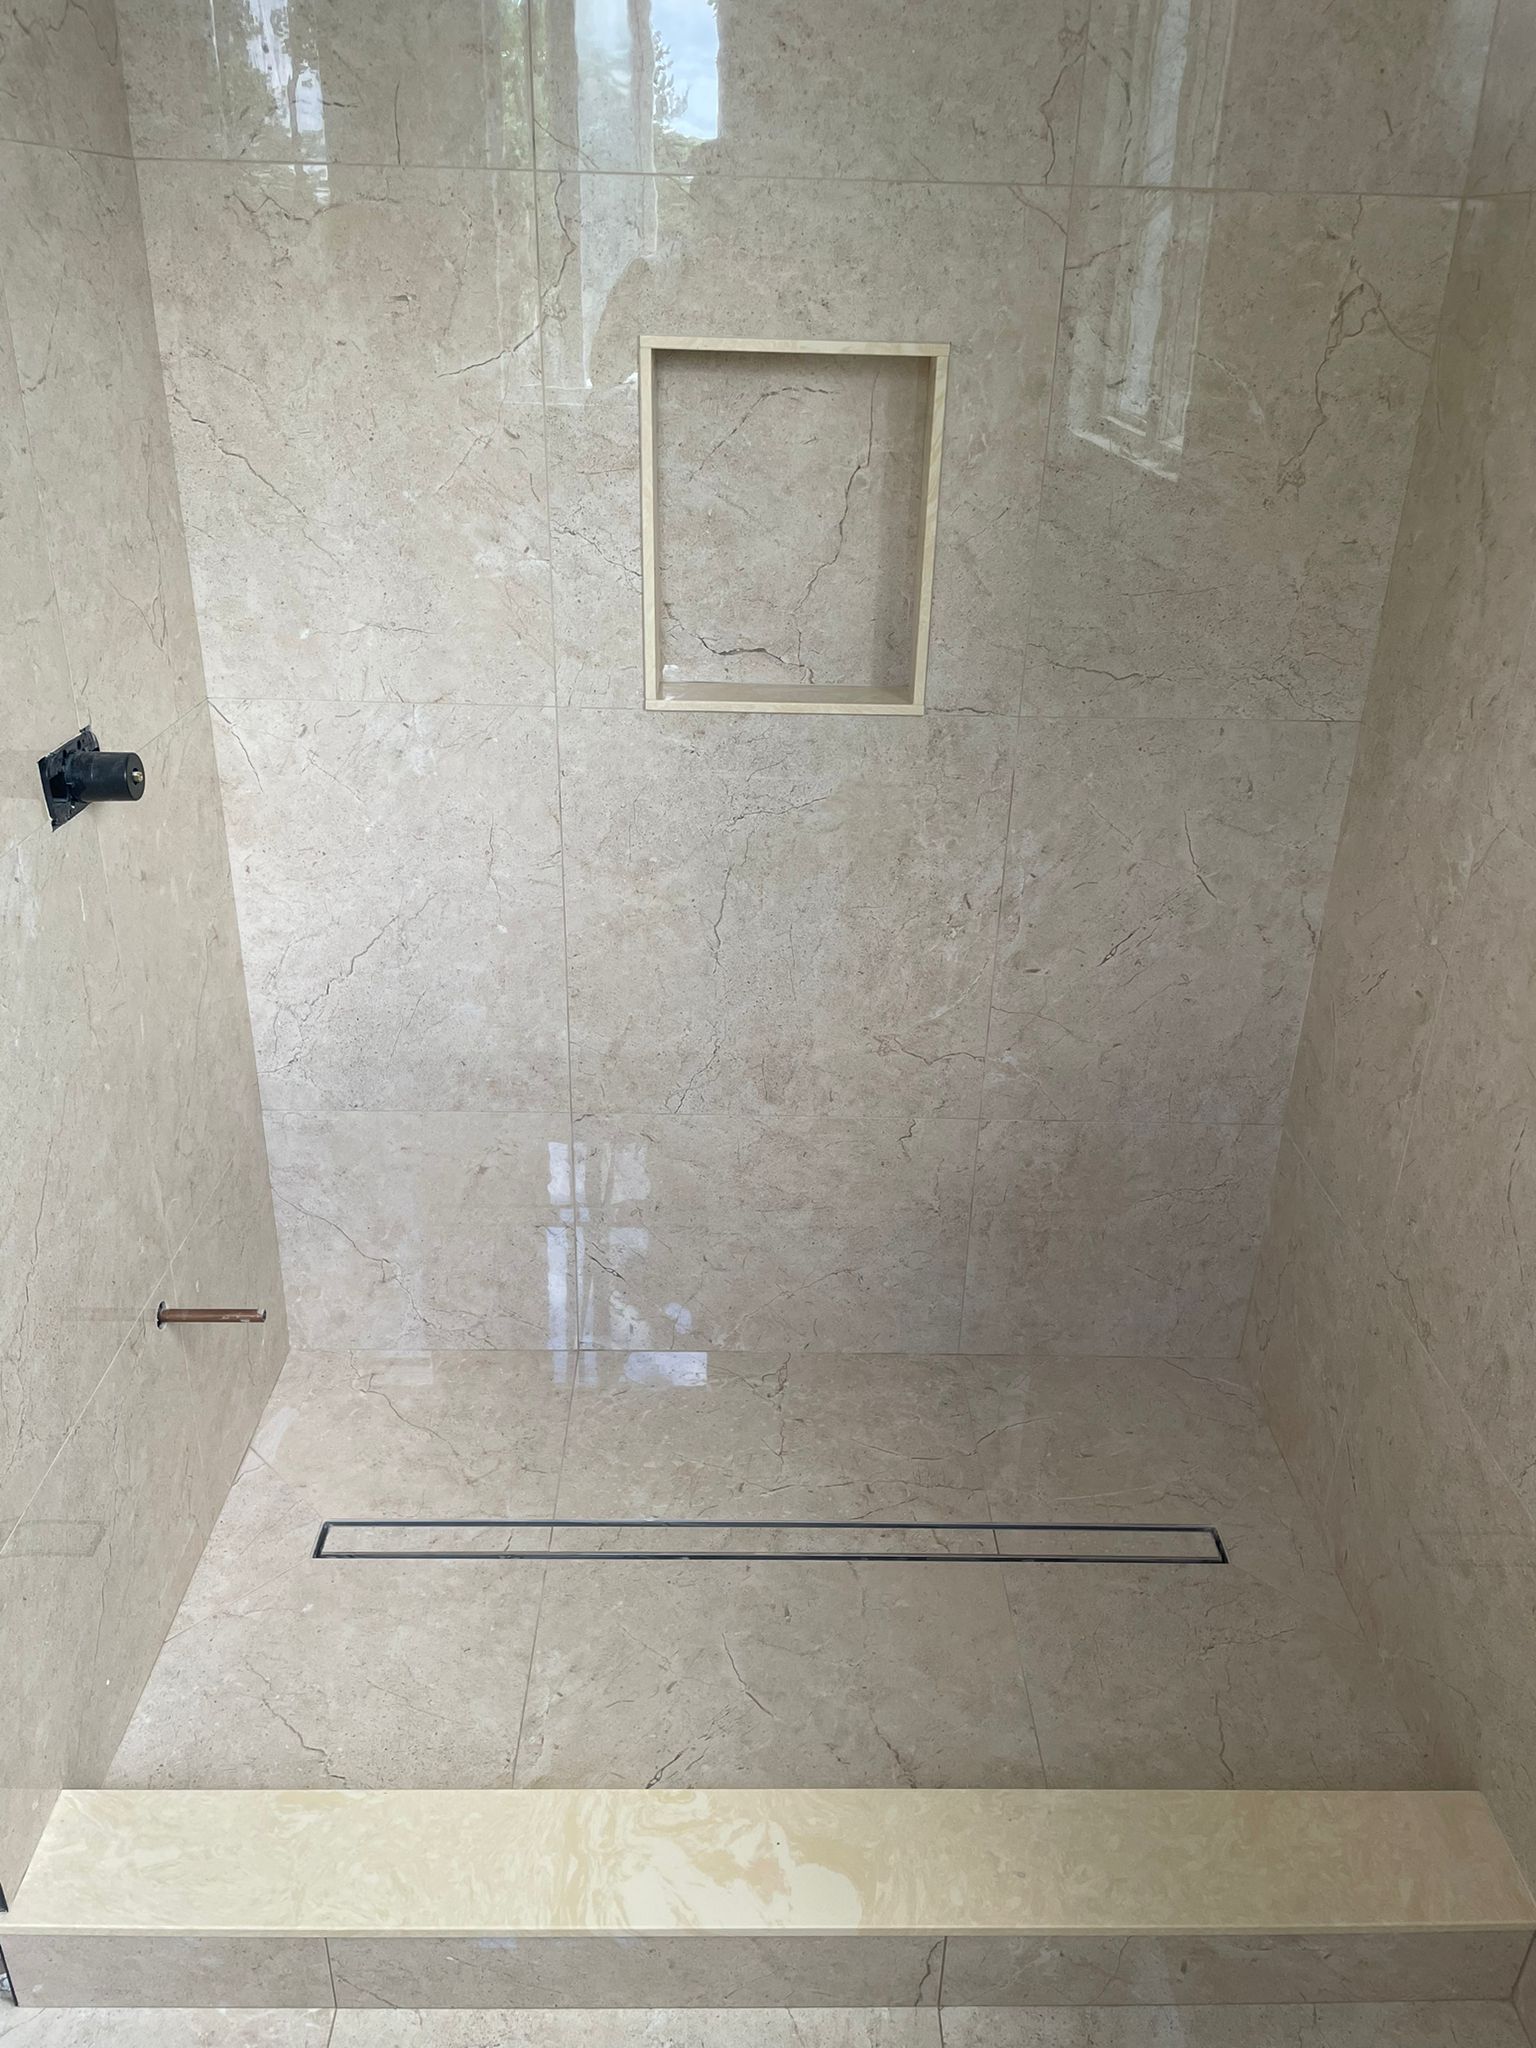 Pickering Bathroom tiles installation at Markom Tiles